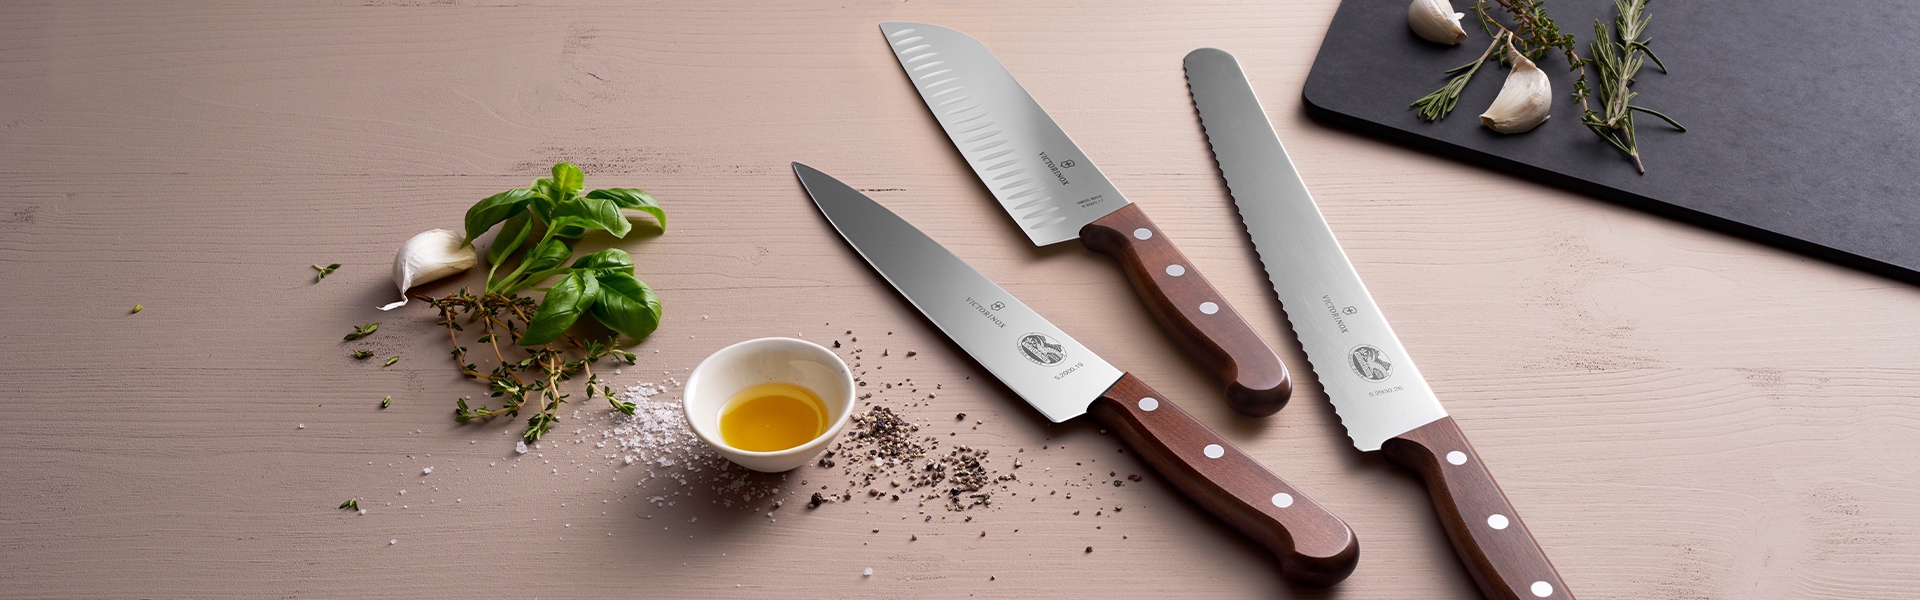 Victorinox - Kitchen utensils